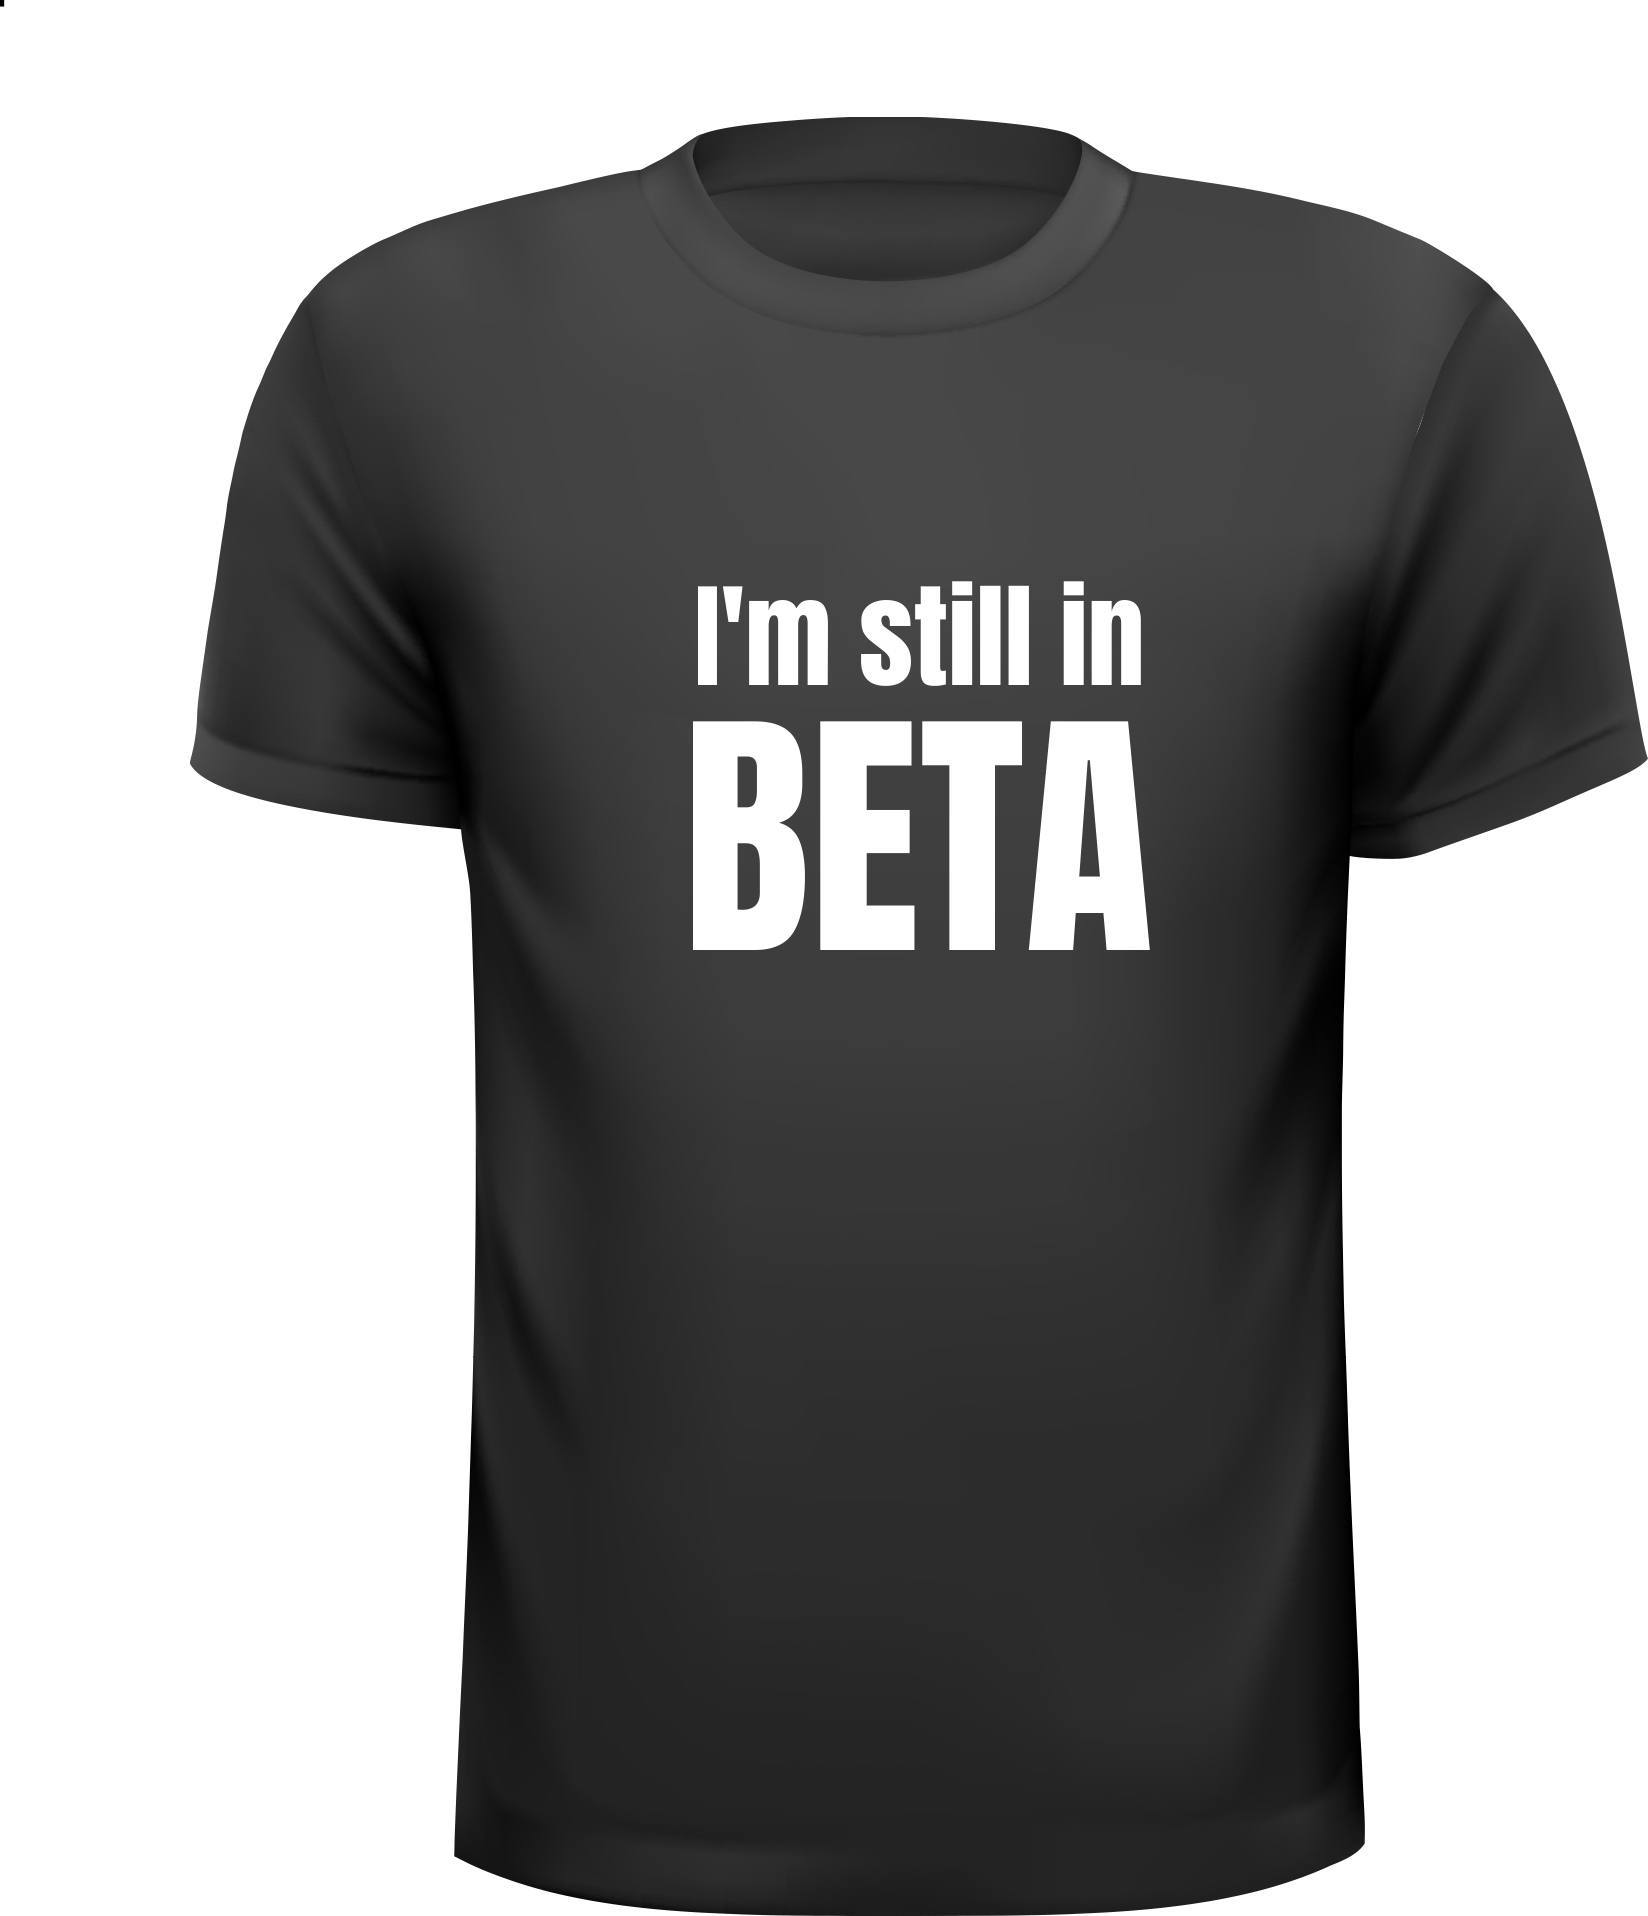 T-shirtje I'm still in beta. Nog niet af in ontwikkeling